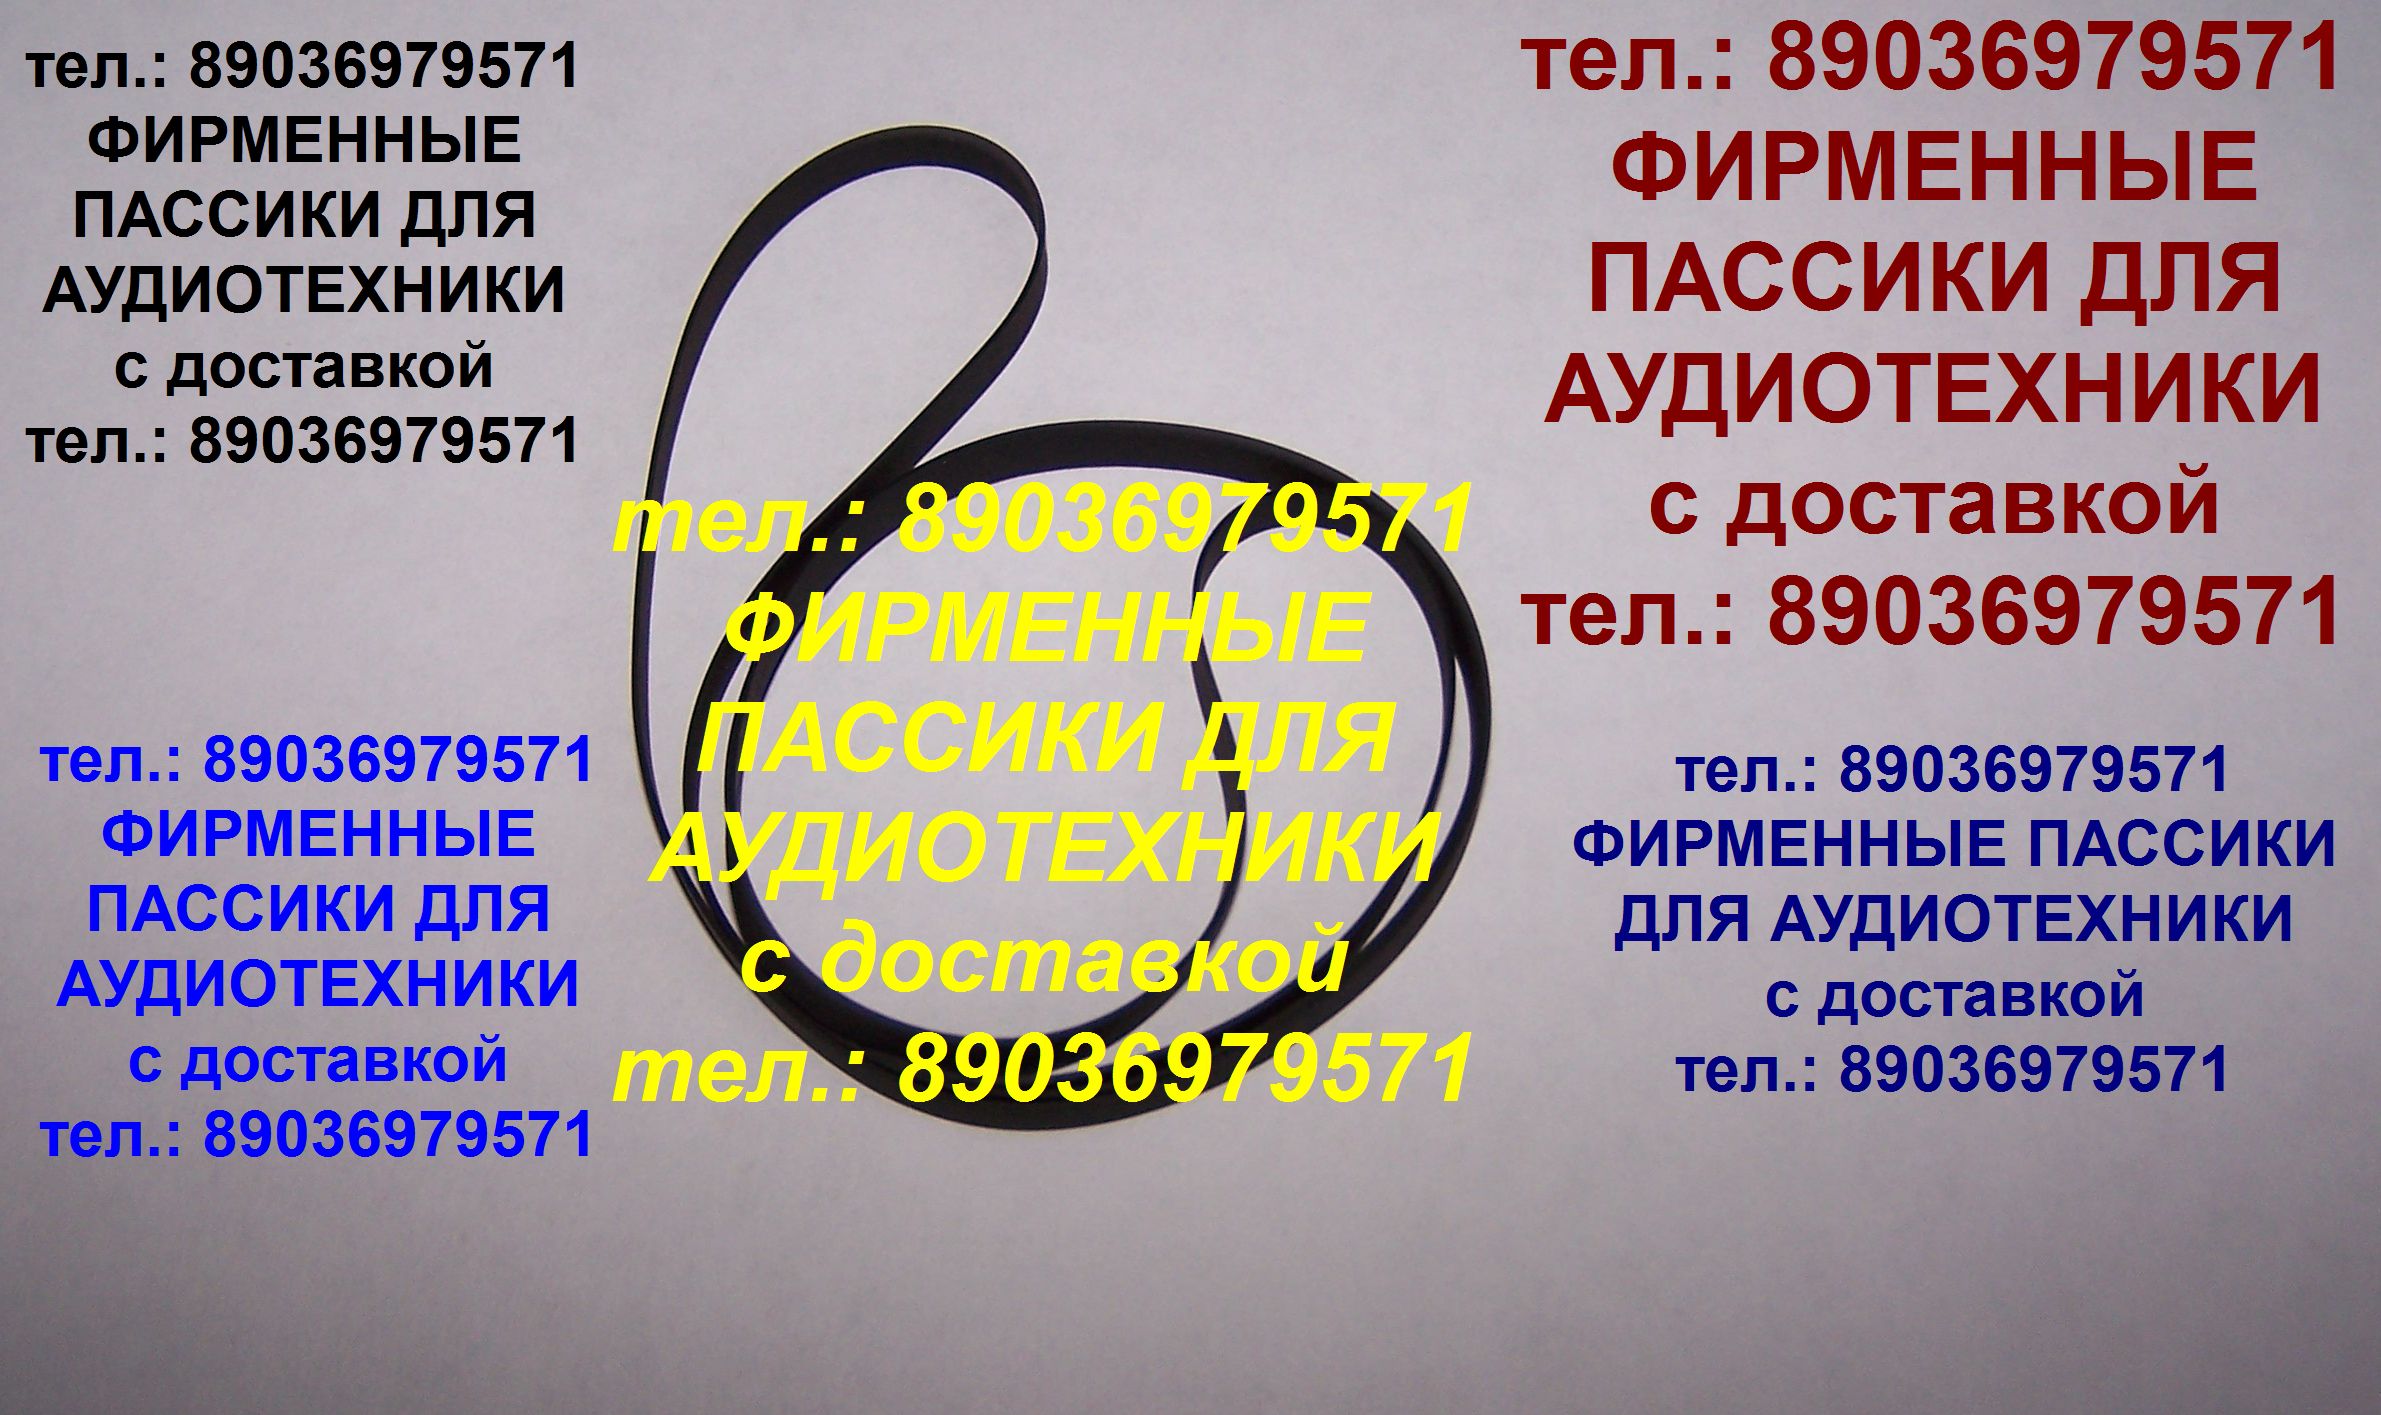 Новый пассик для винилового проигрывателя Pioneer PL-A205. Тел.: 89036979571. Пересылка пасиков для аудио в регионы. Пассики импортного производства. в городе Москва, фото 1, телефон продавца: +7 (903) 697-95-71